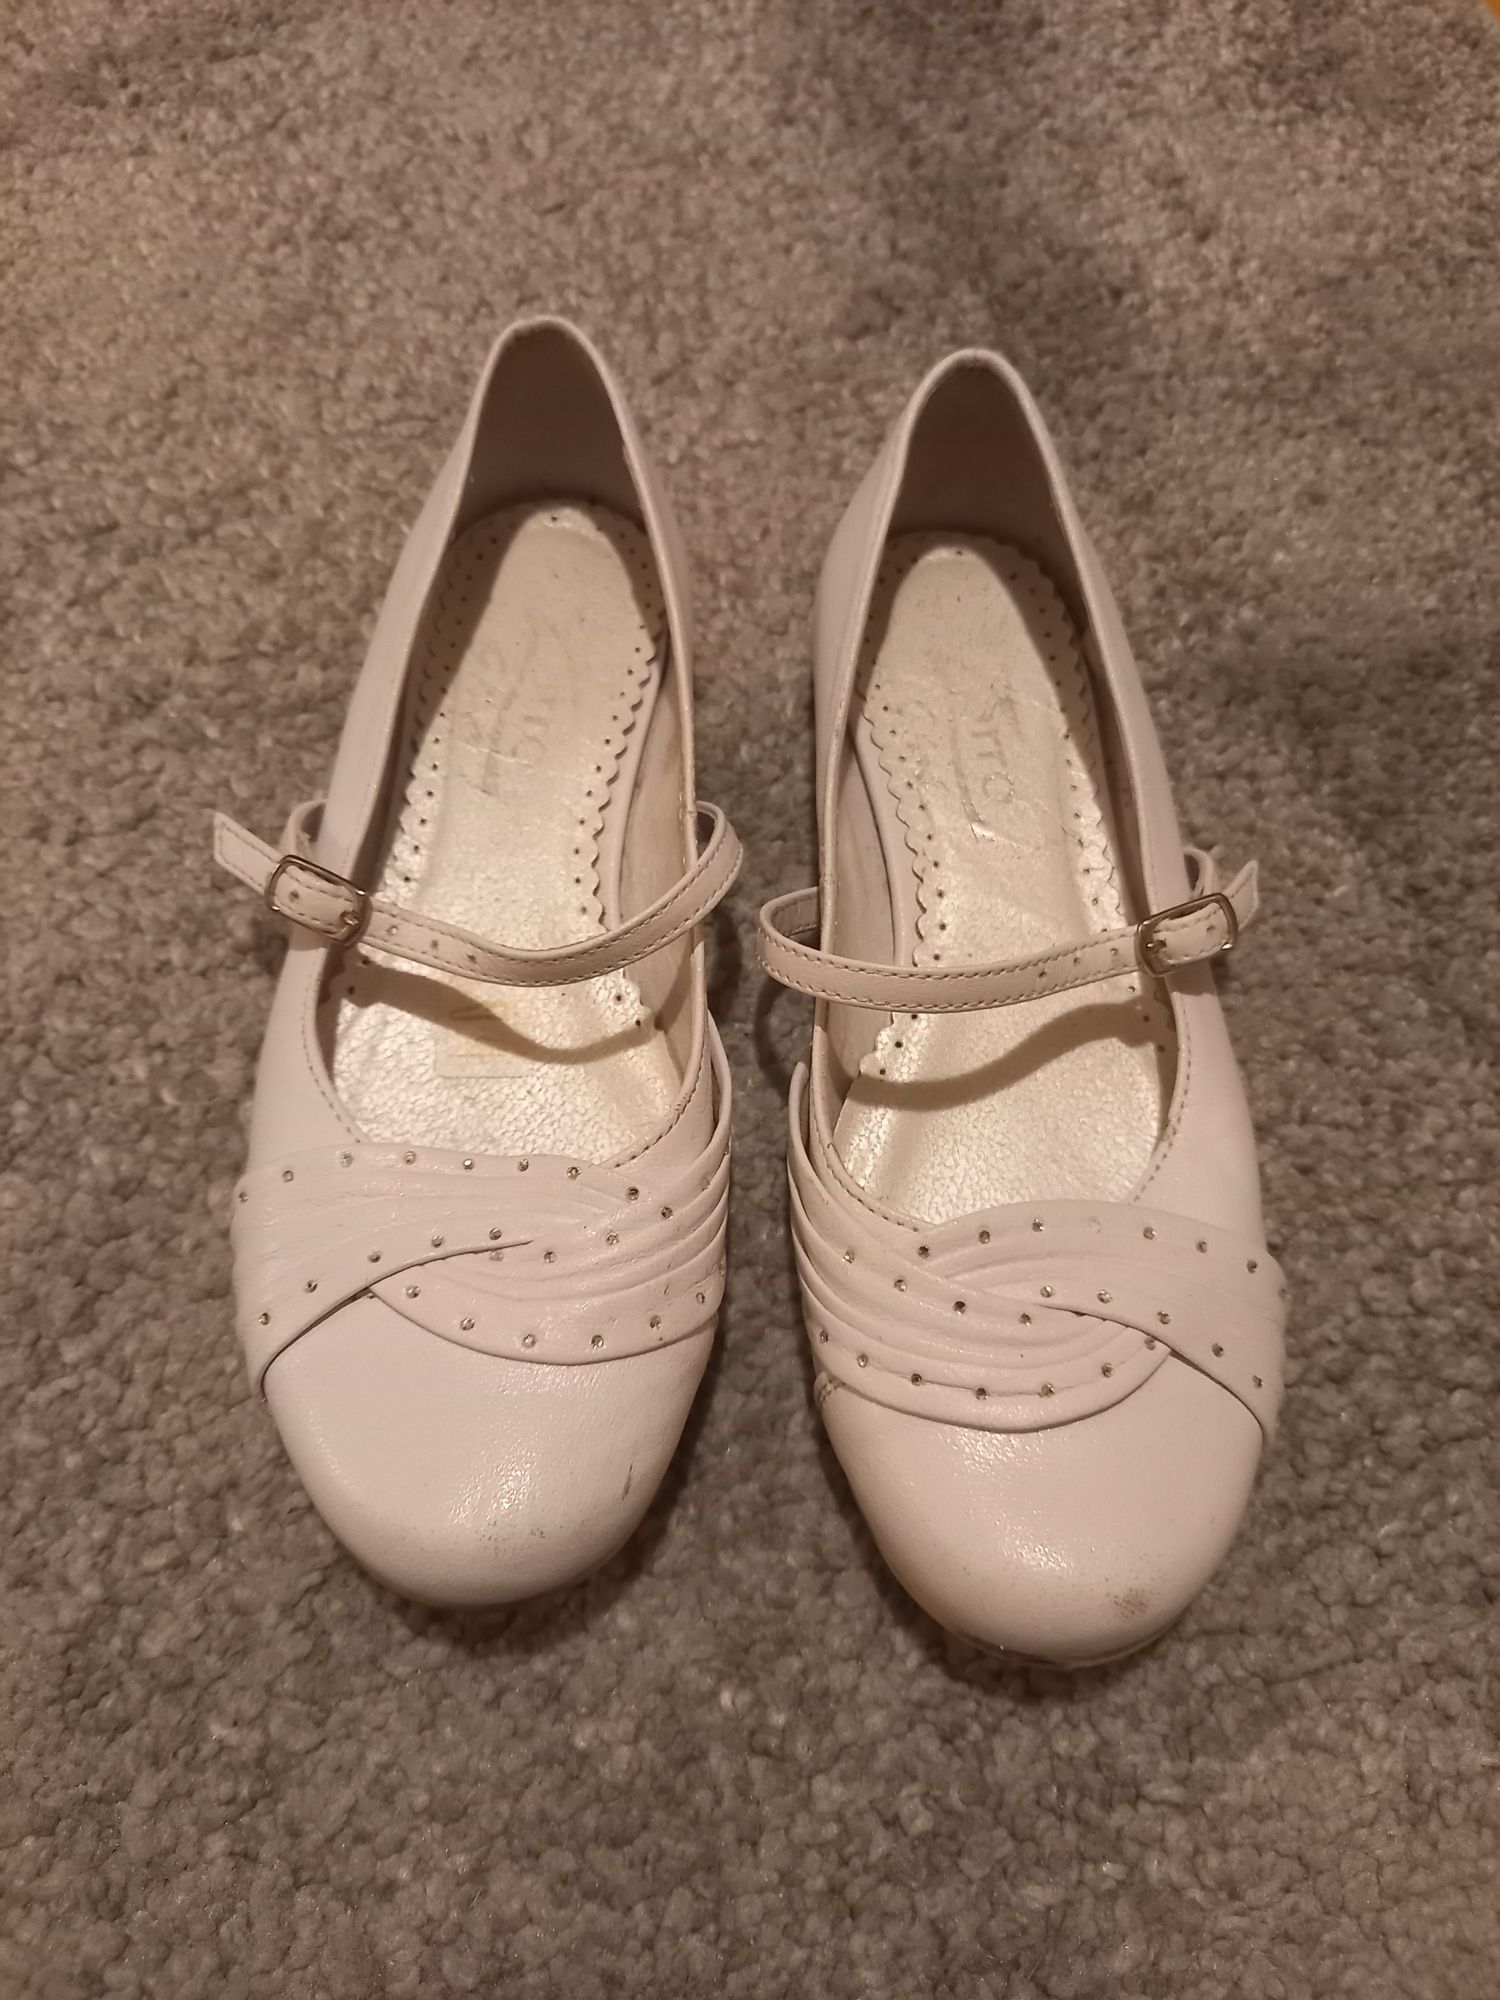 Pantofle białe komunia 34